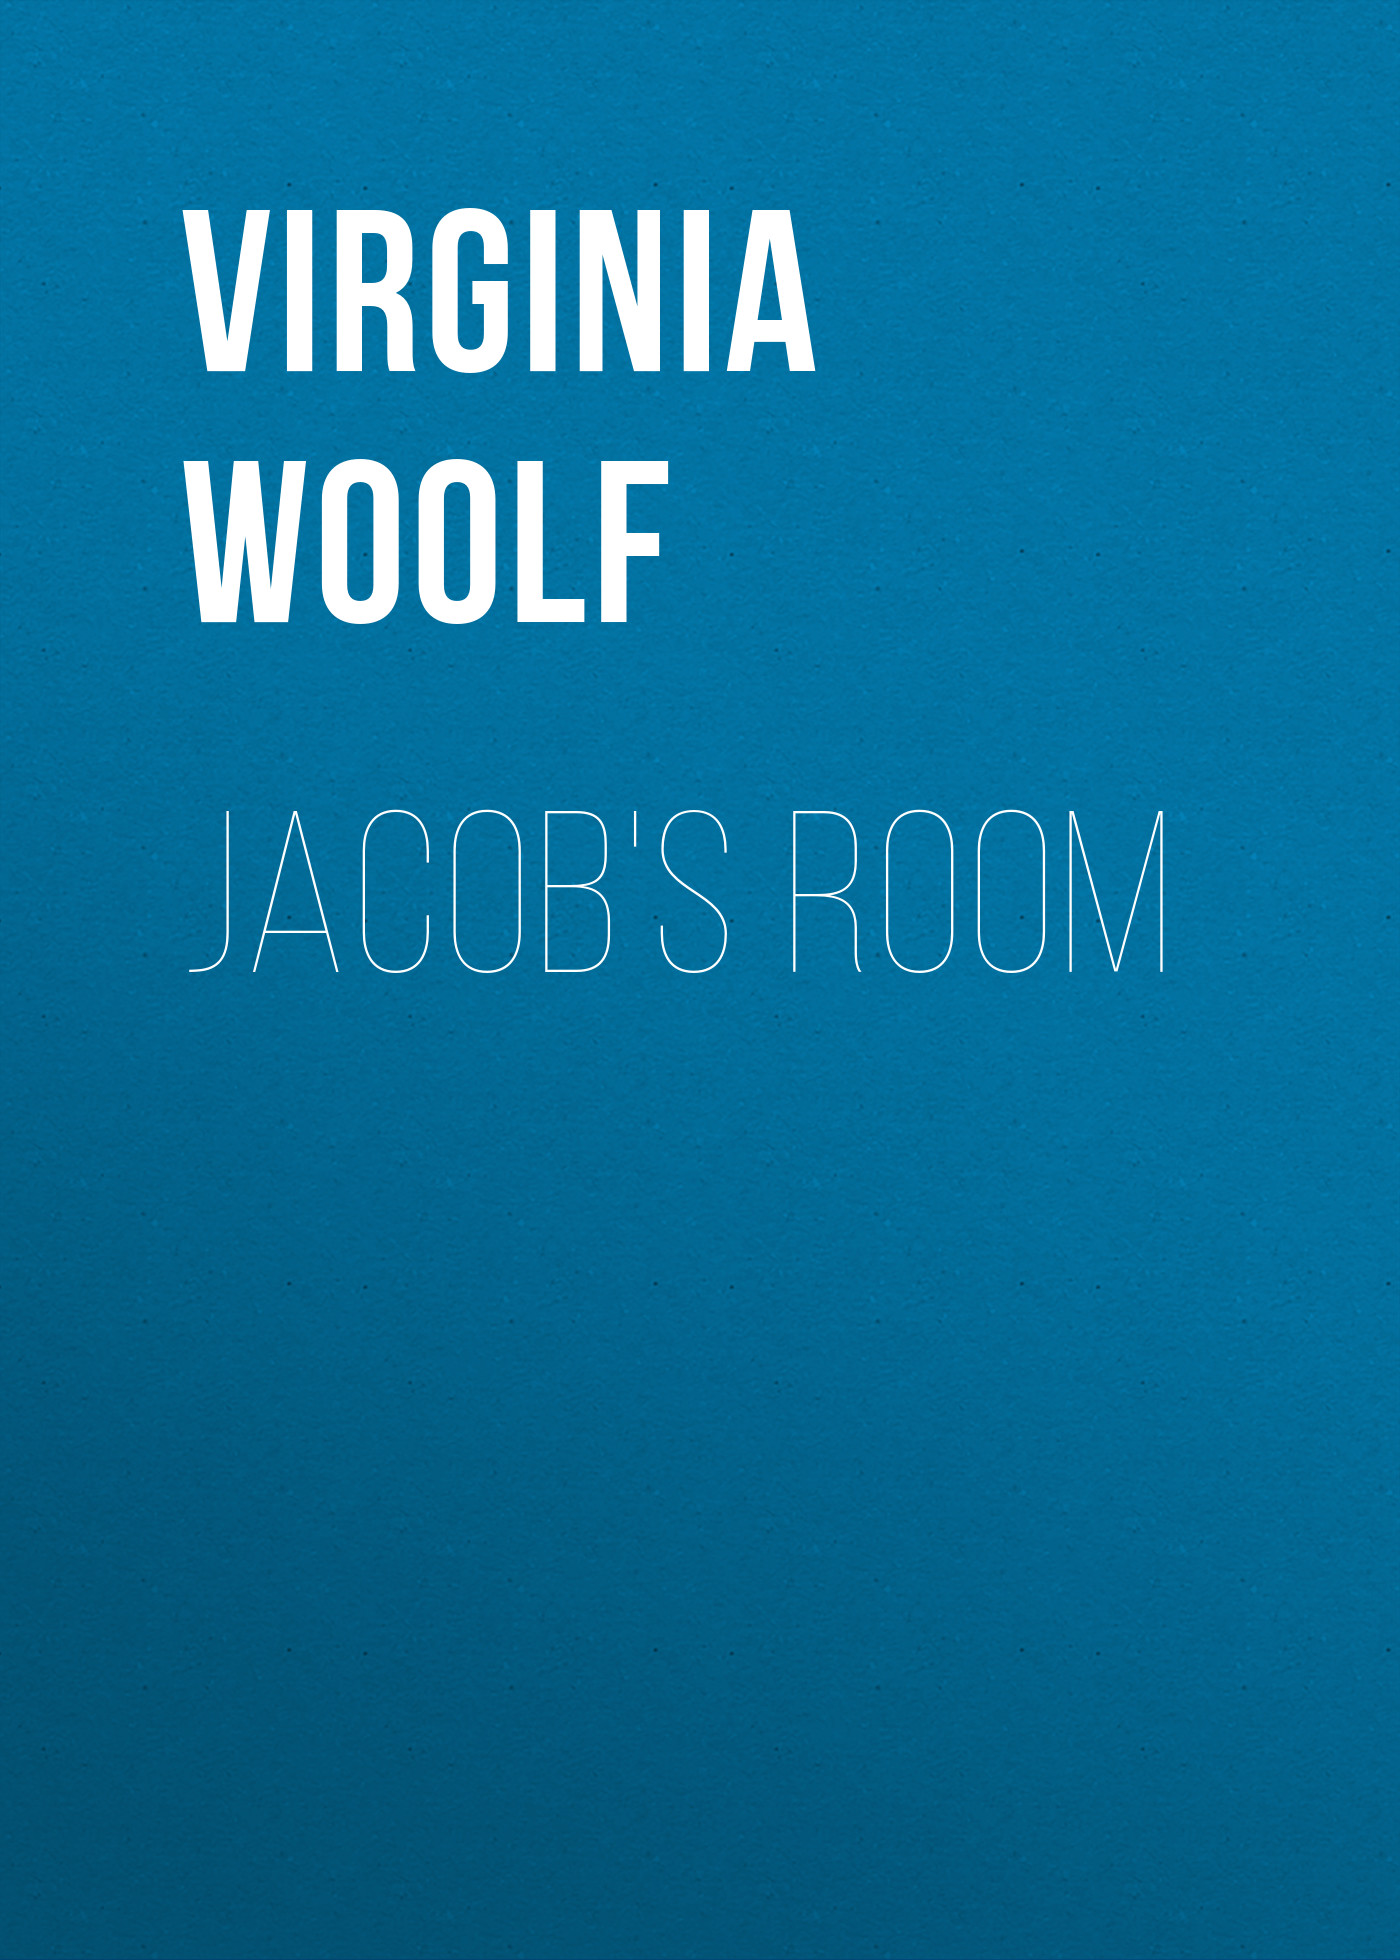 Книга Jacob's Room из серии , созданная Virginia Woolf, может относится к жанру Литература 20 века, Зарубежная классика. Стоимость электронной книги Jacob's Room с идентификатором 25560020 составляет 0 руб.